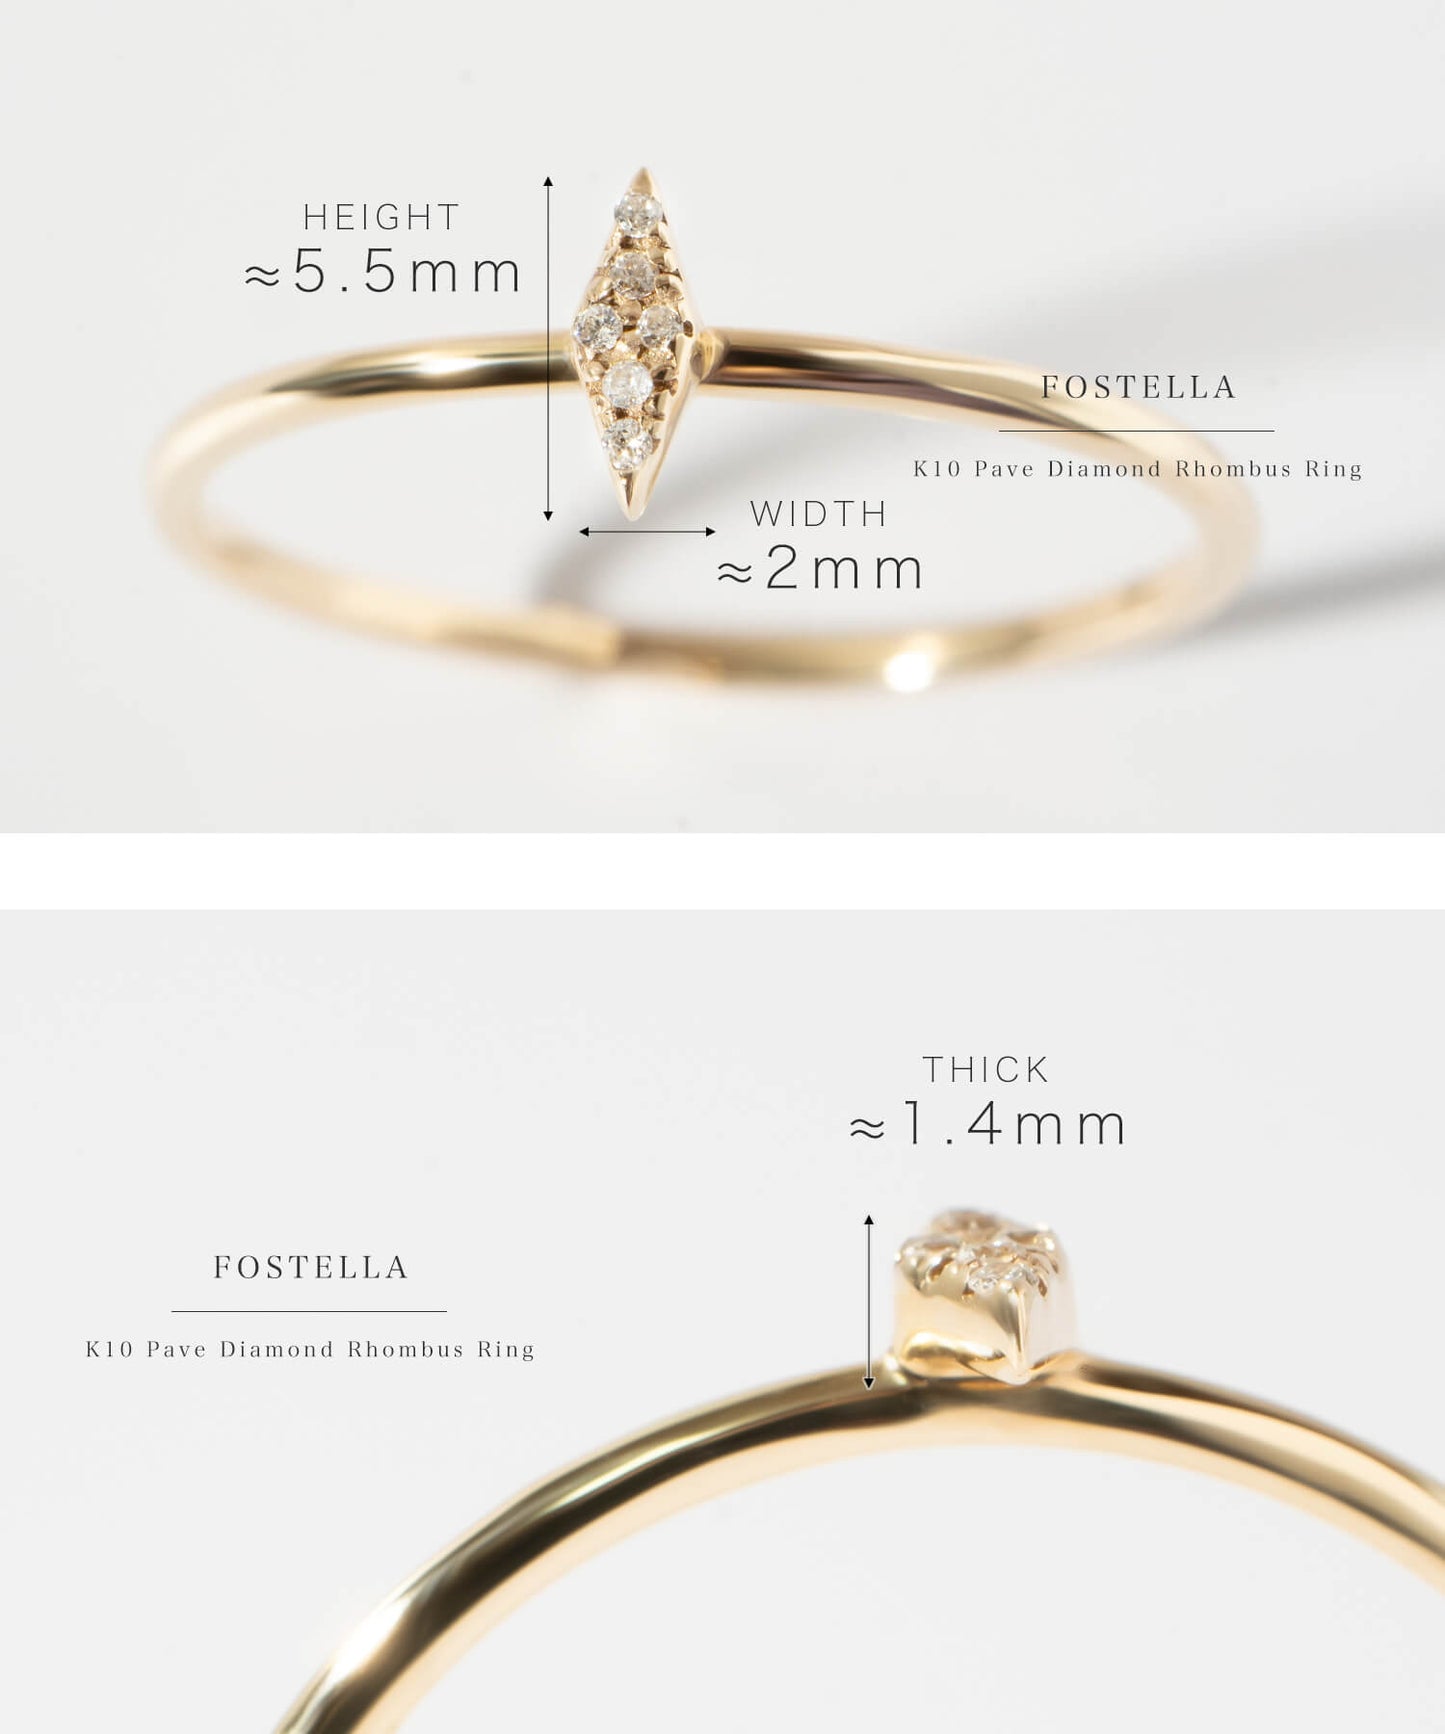 K10 Pave Diamond Rhombus Ring | FOSTELLA RING